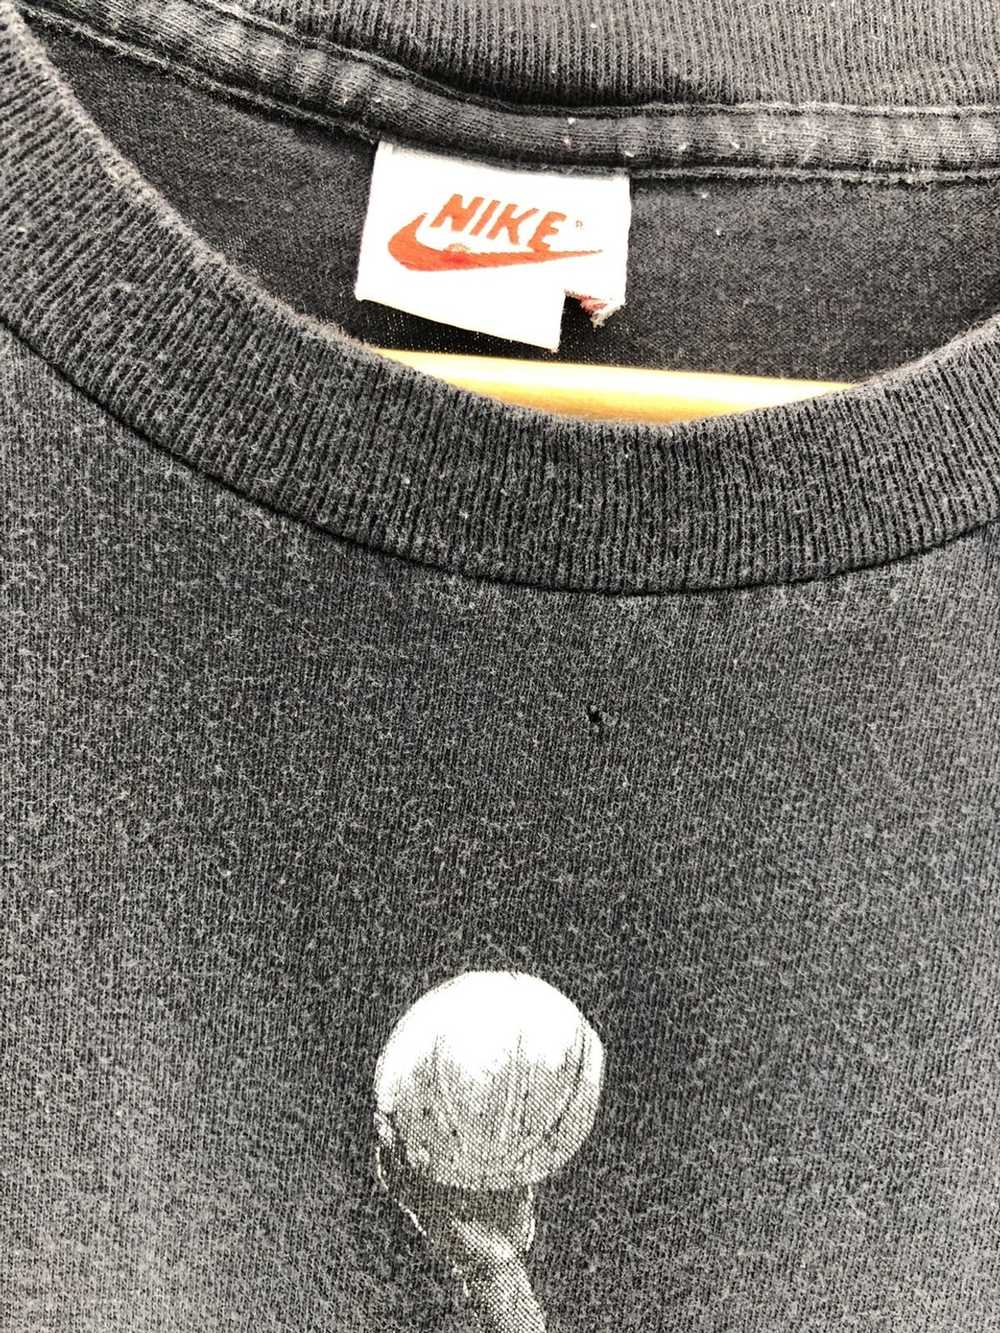 NBA × Nike × Vintage Vintage Nike Jordan T Shirt … - image 4